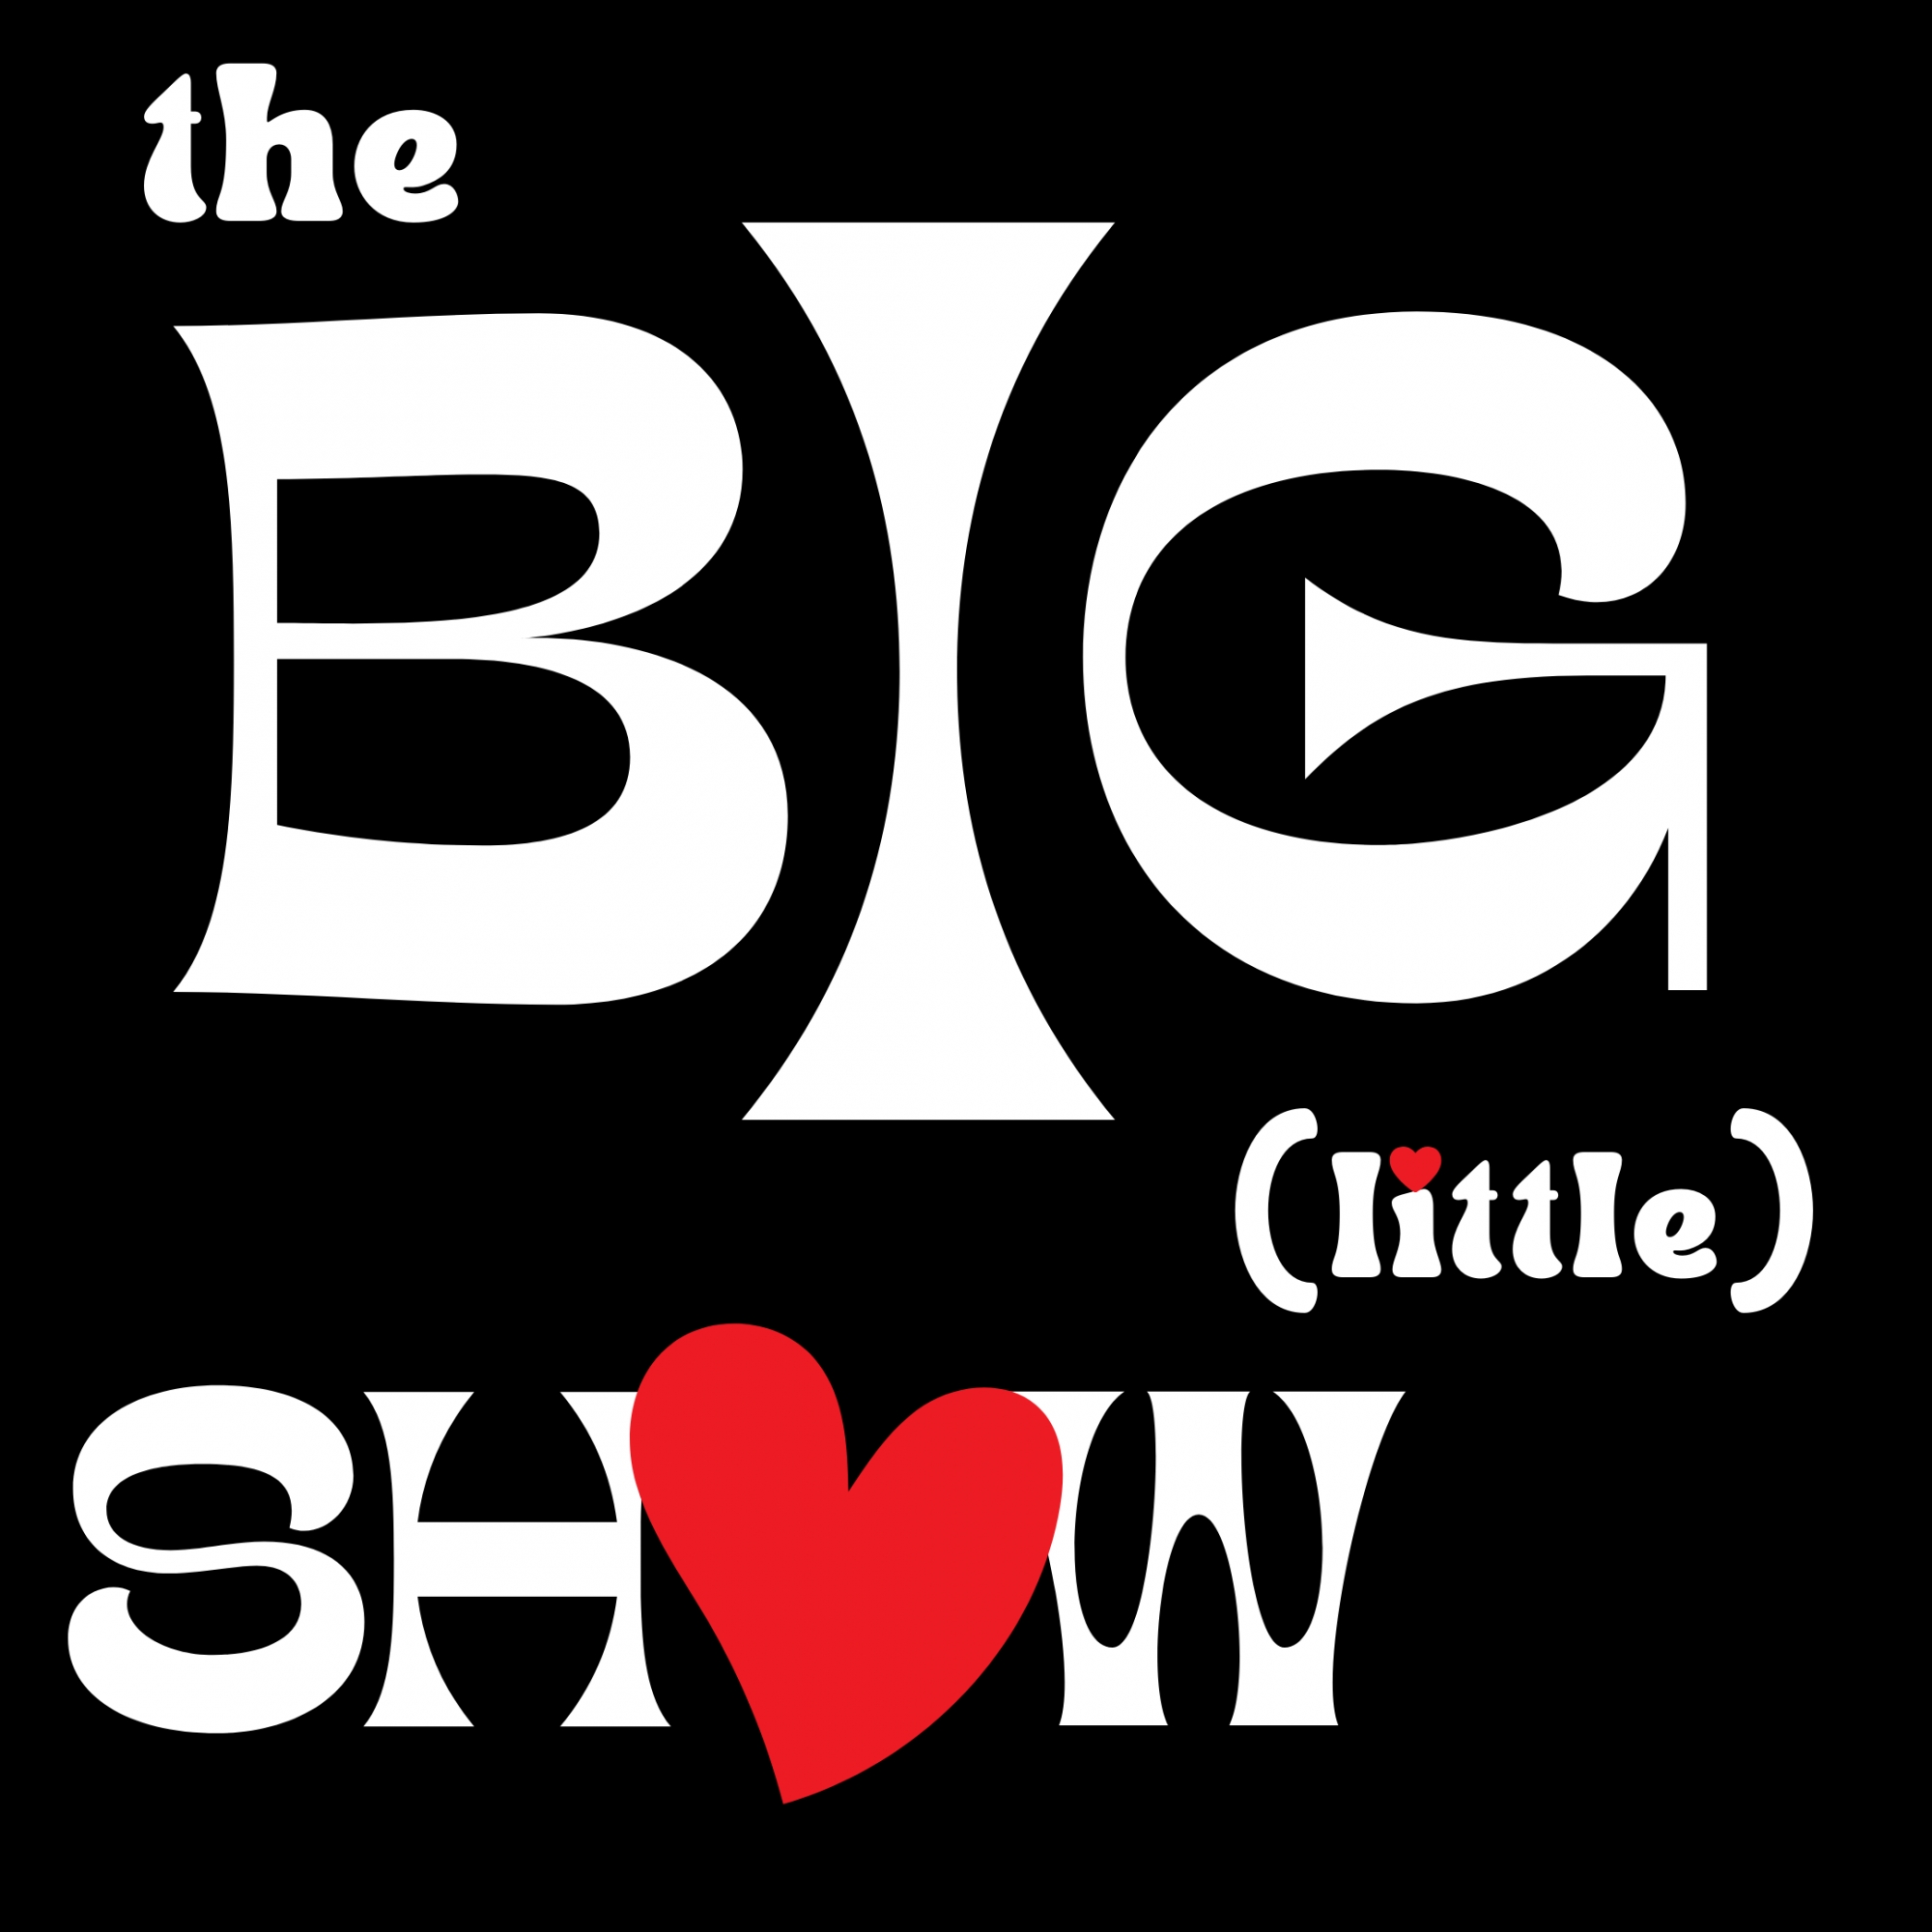 Dec '22 The Big (little) Show - Show 5